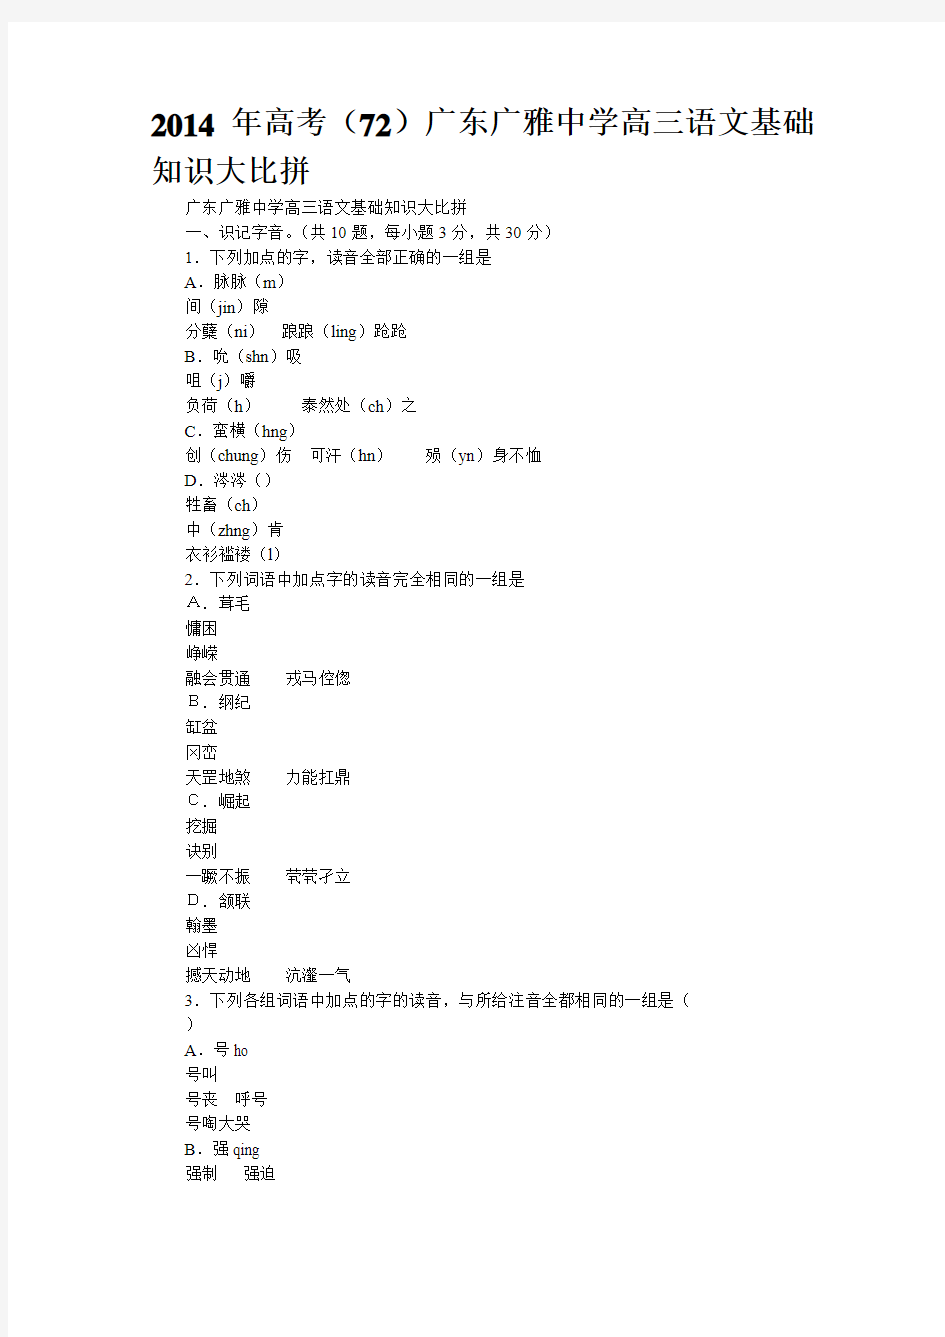 2014年高考(72)广东广雅中学高三语文基础知识大比拼